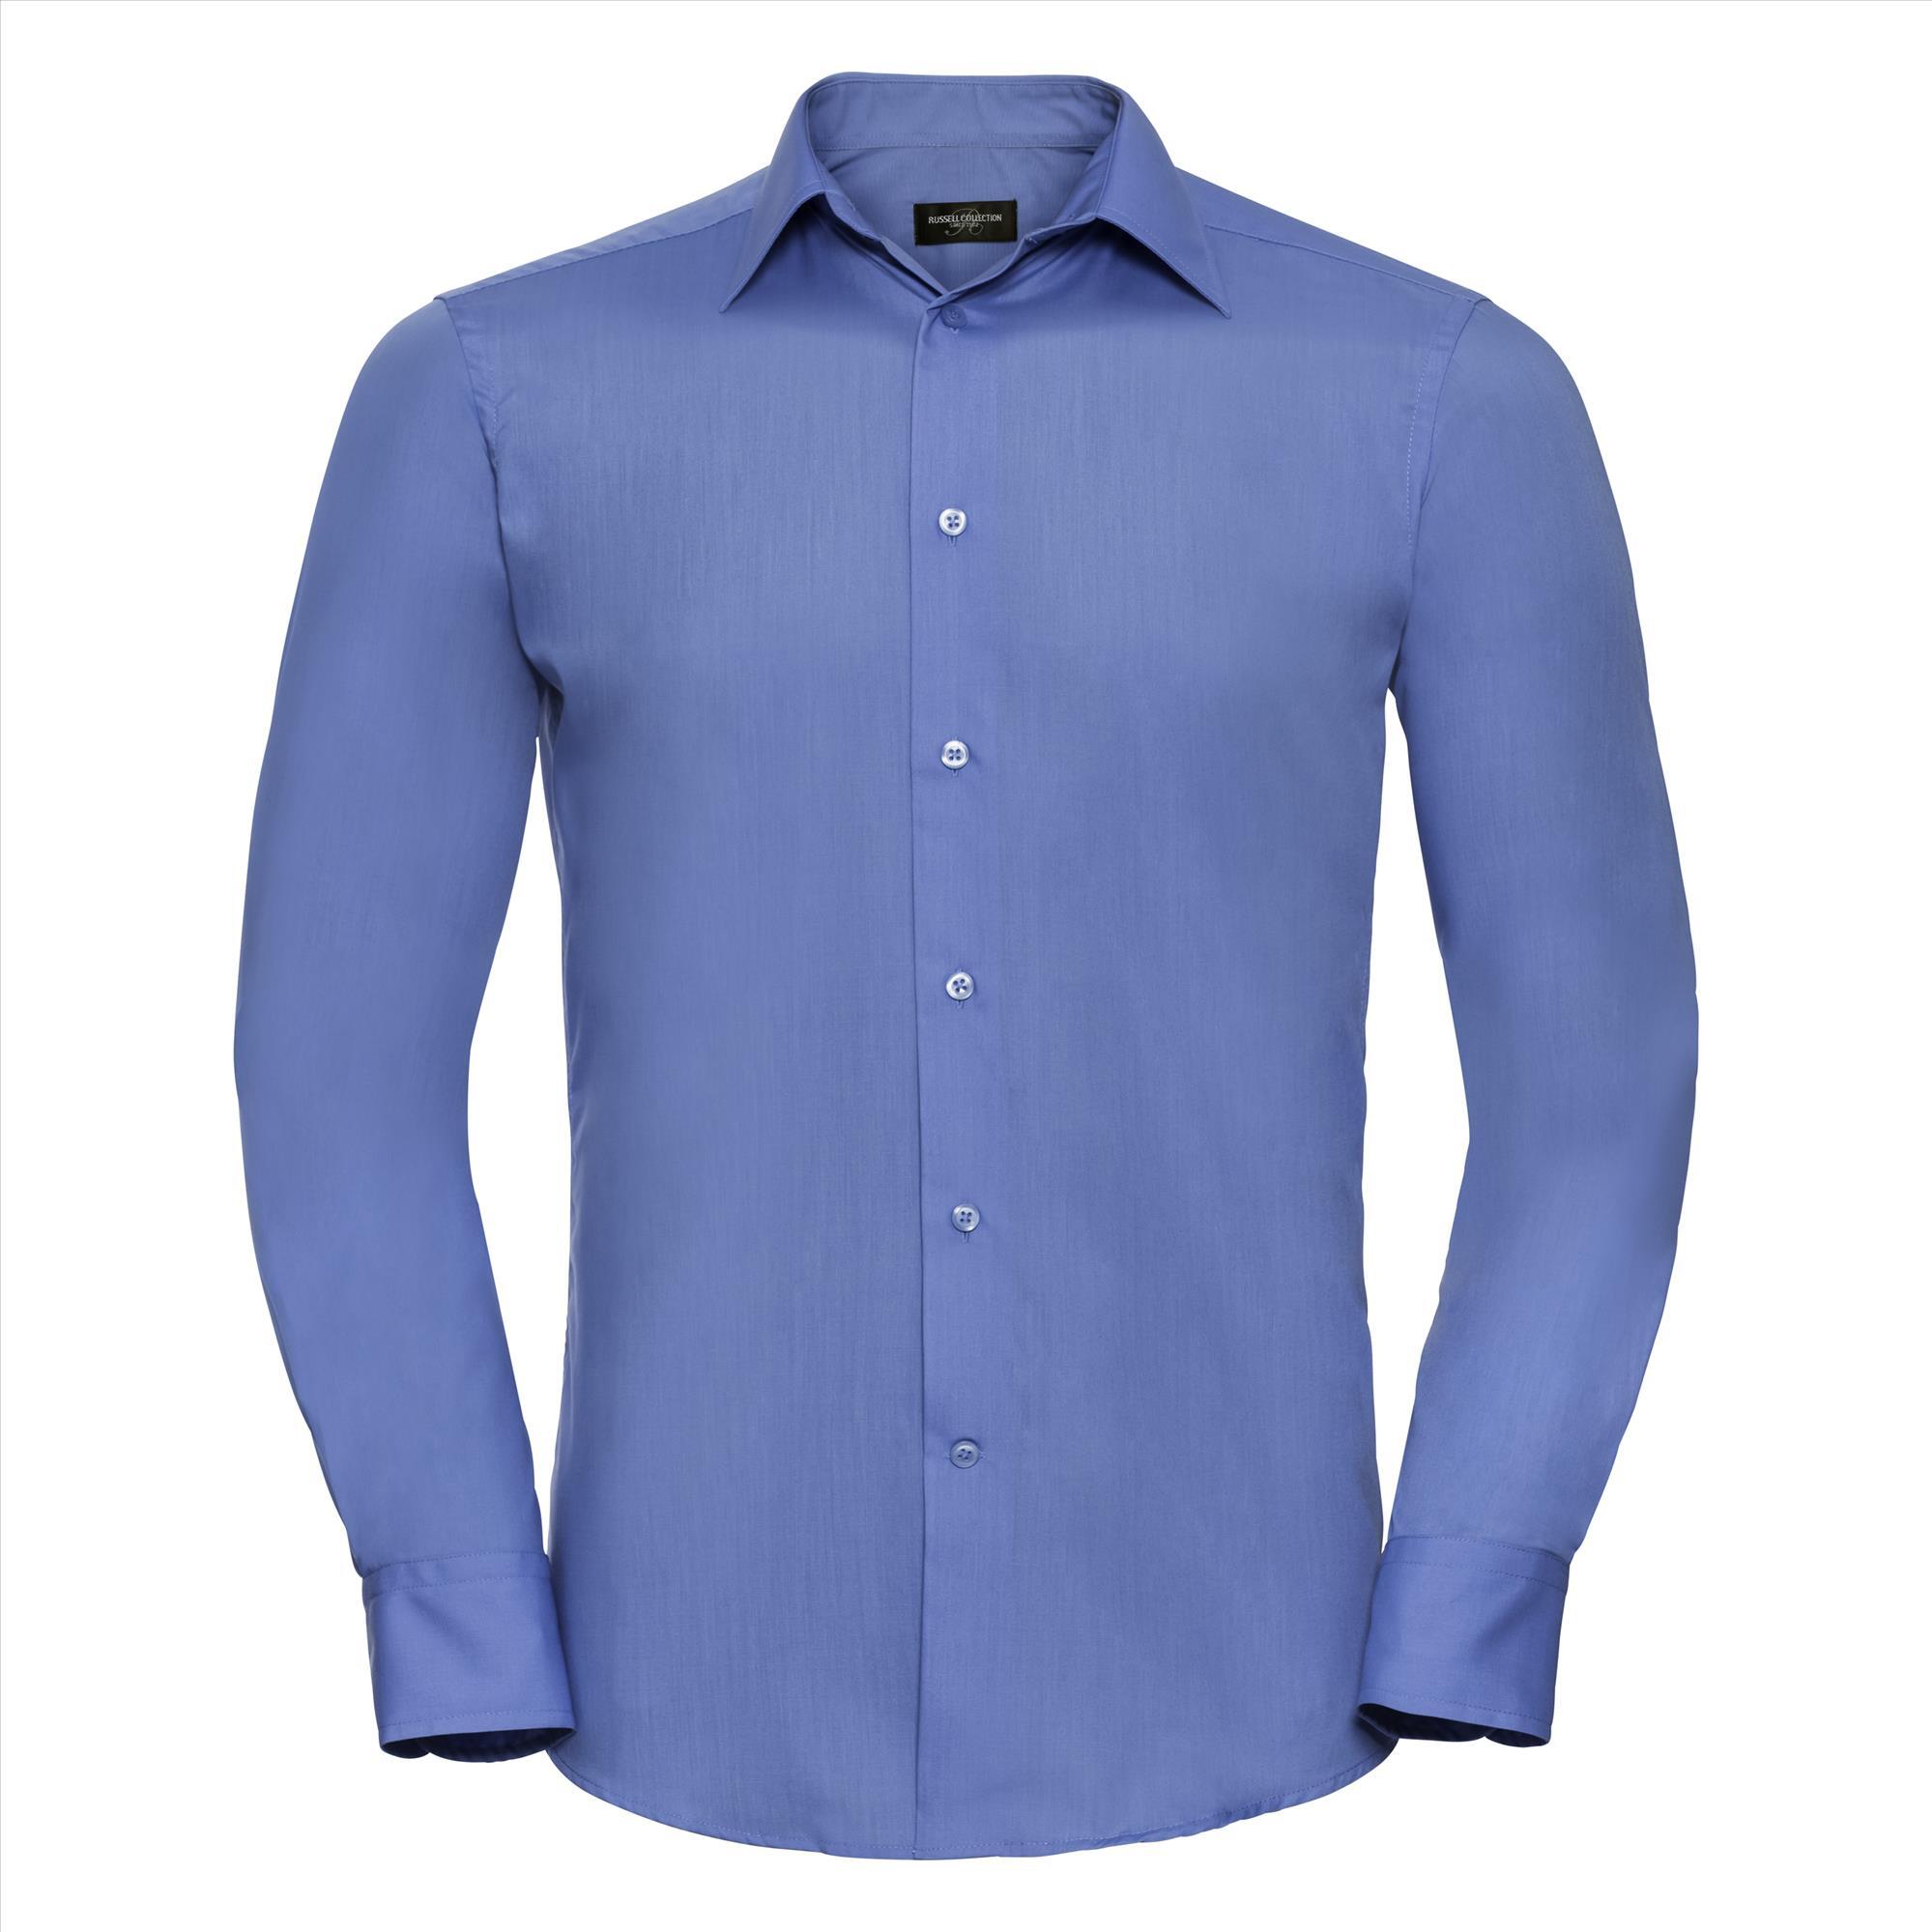 Heren overhemd corporate blue te bedrukken met bedrijslogo te personaliseren